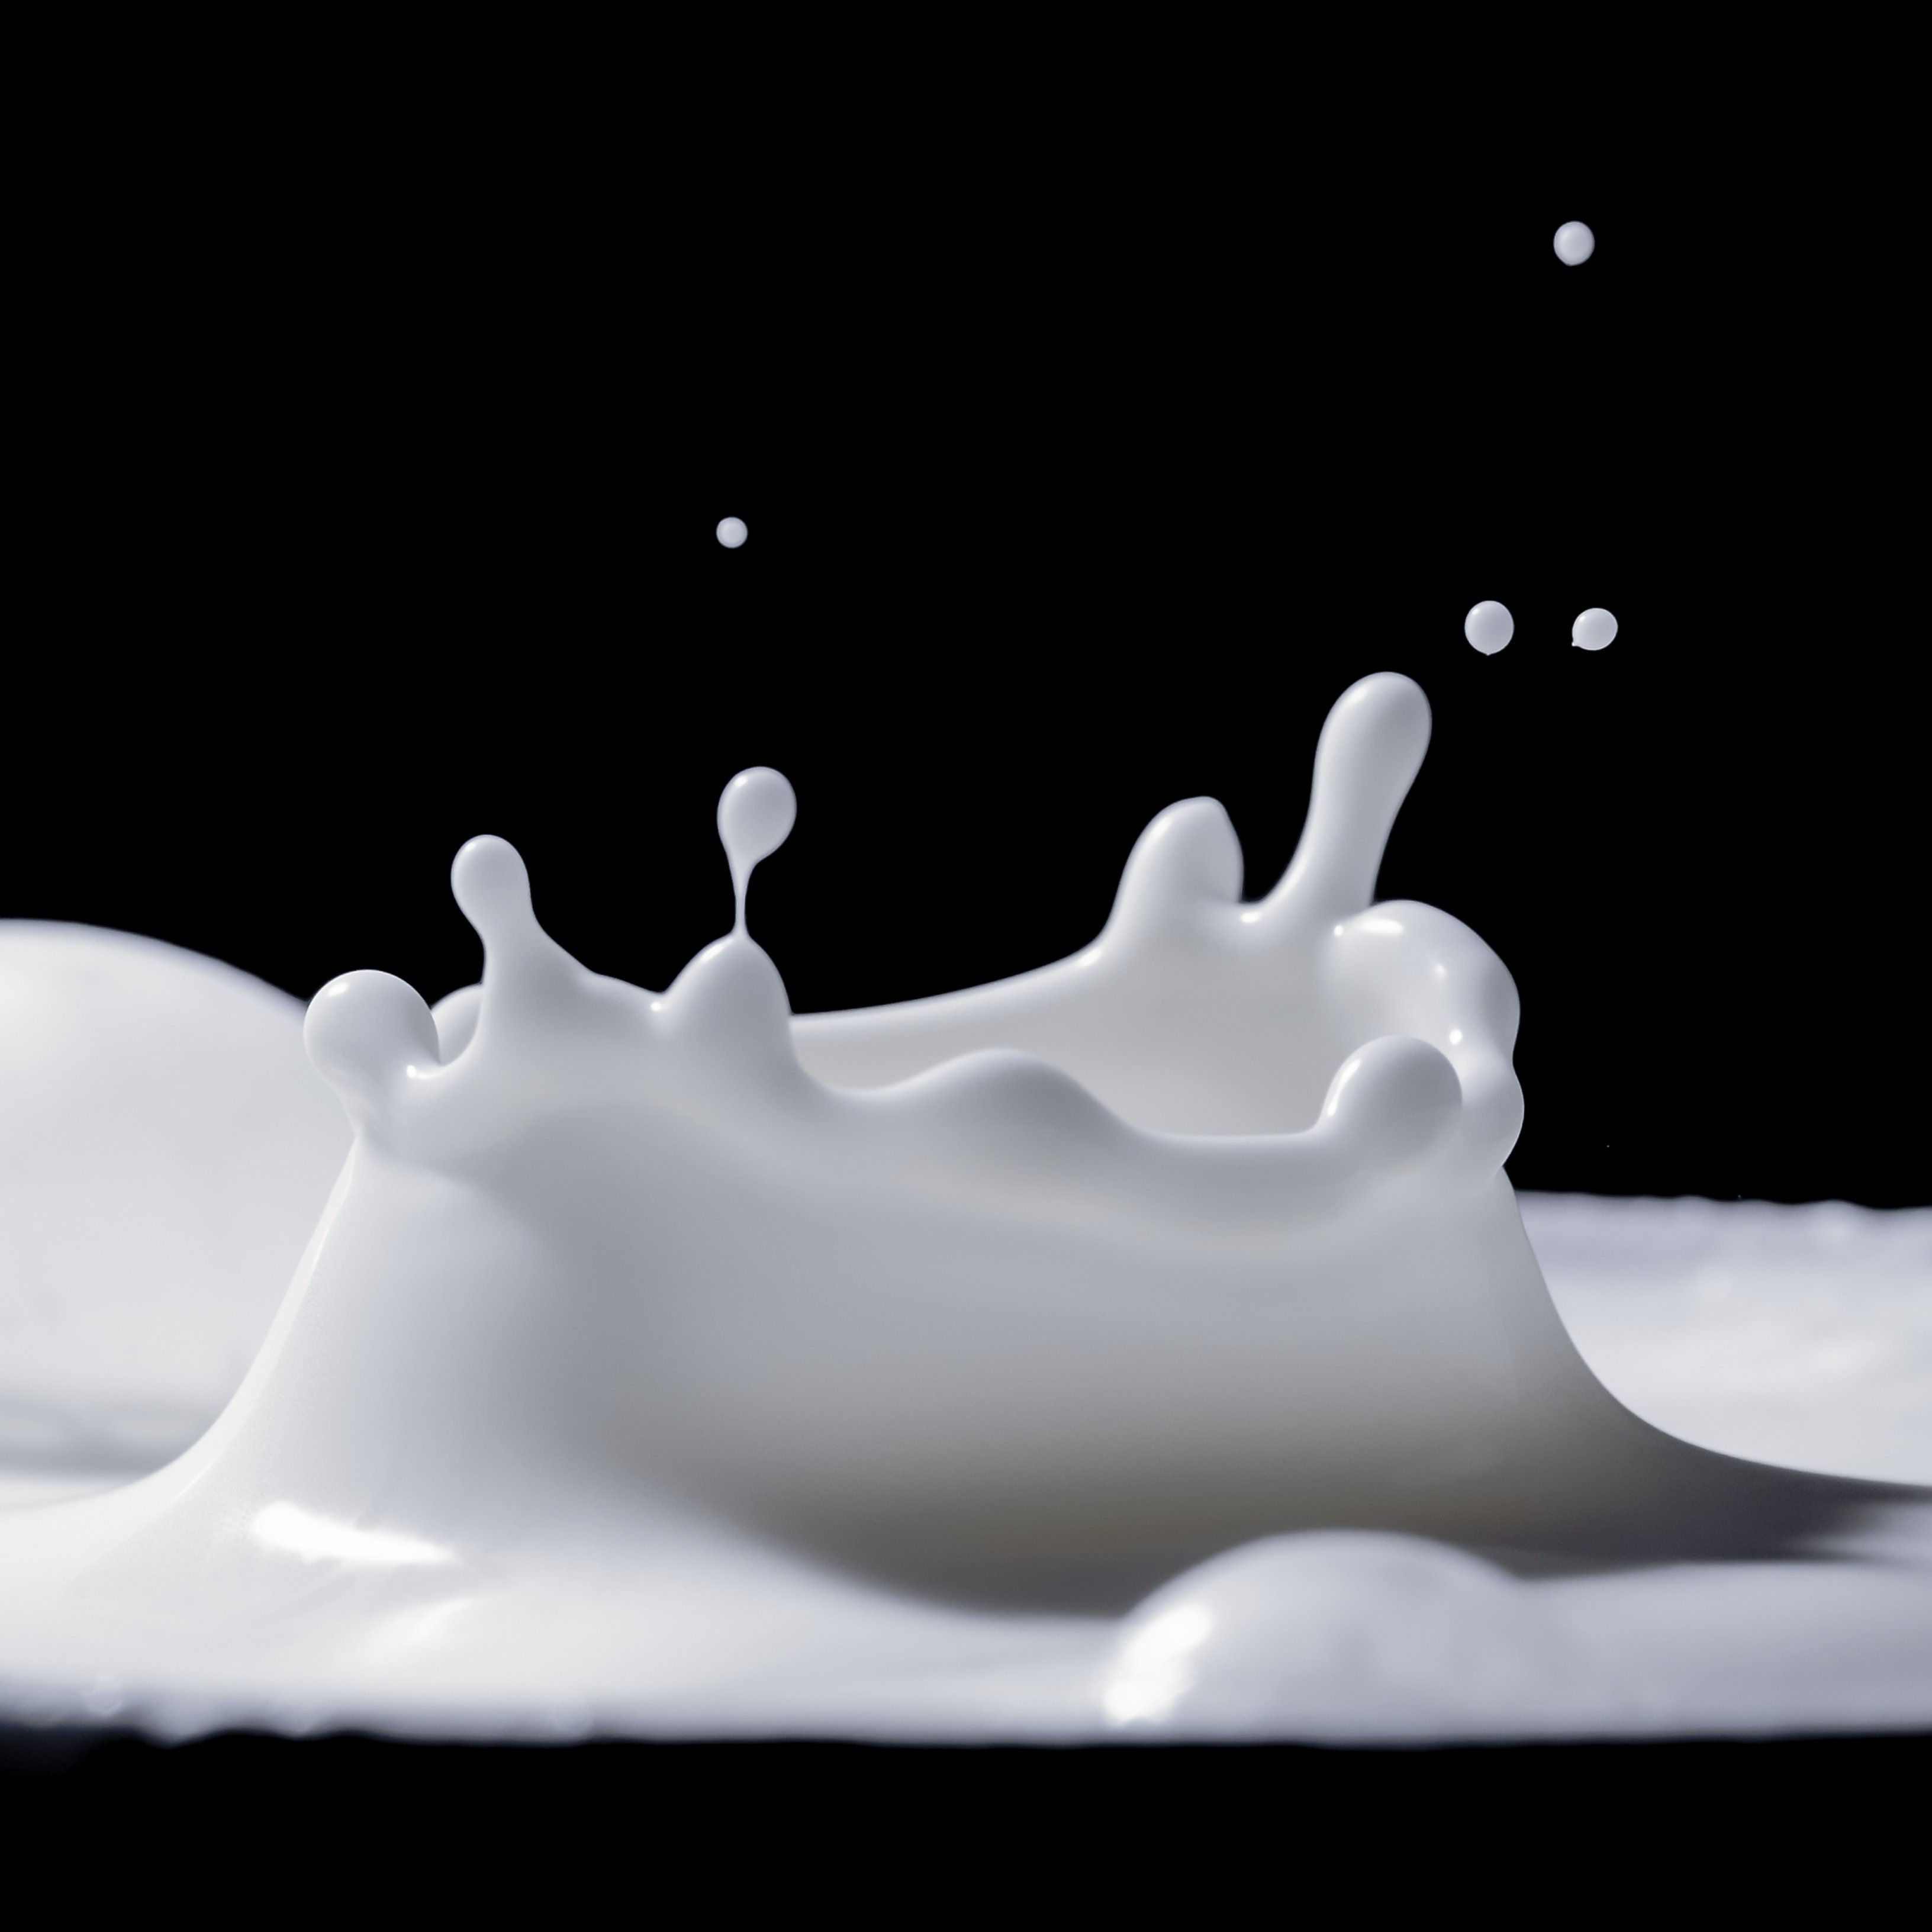 Quatre raons científiques per les quals és beneficiós beure llet sent adult